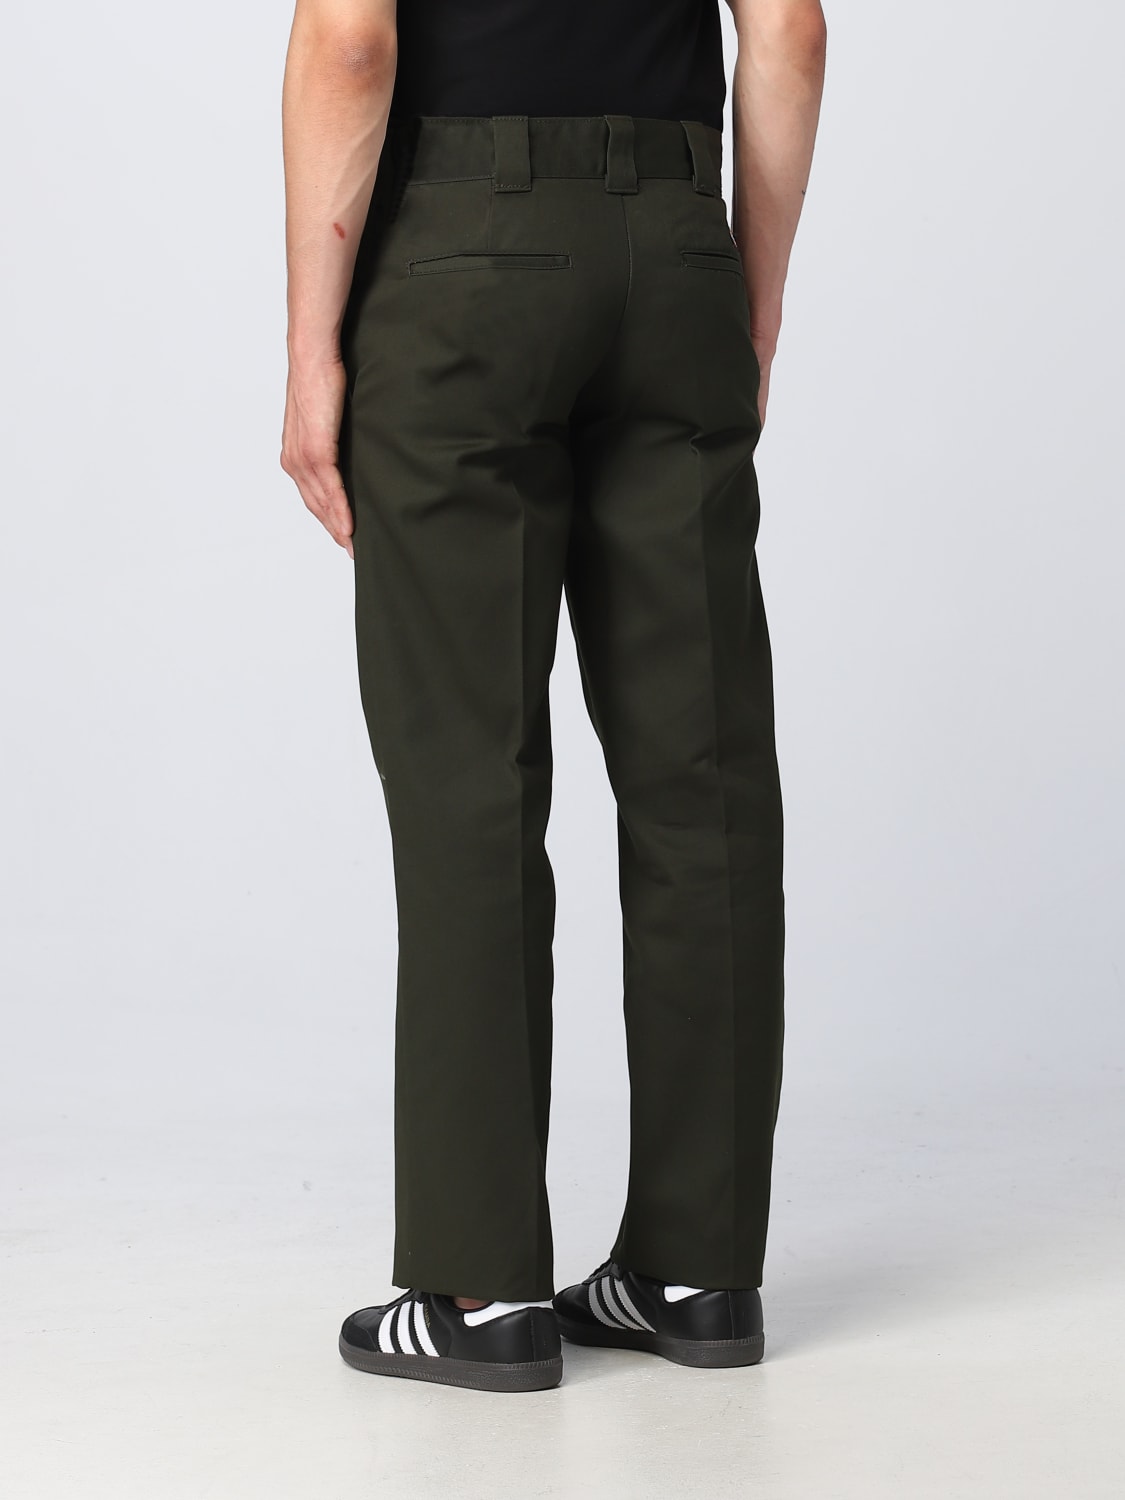 DICKIES: pants for man - Green | Dickies pants DK0A4XK9 online on ...